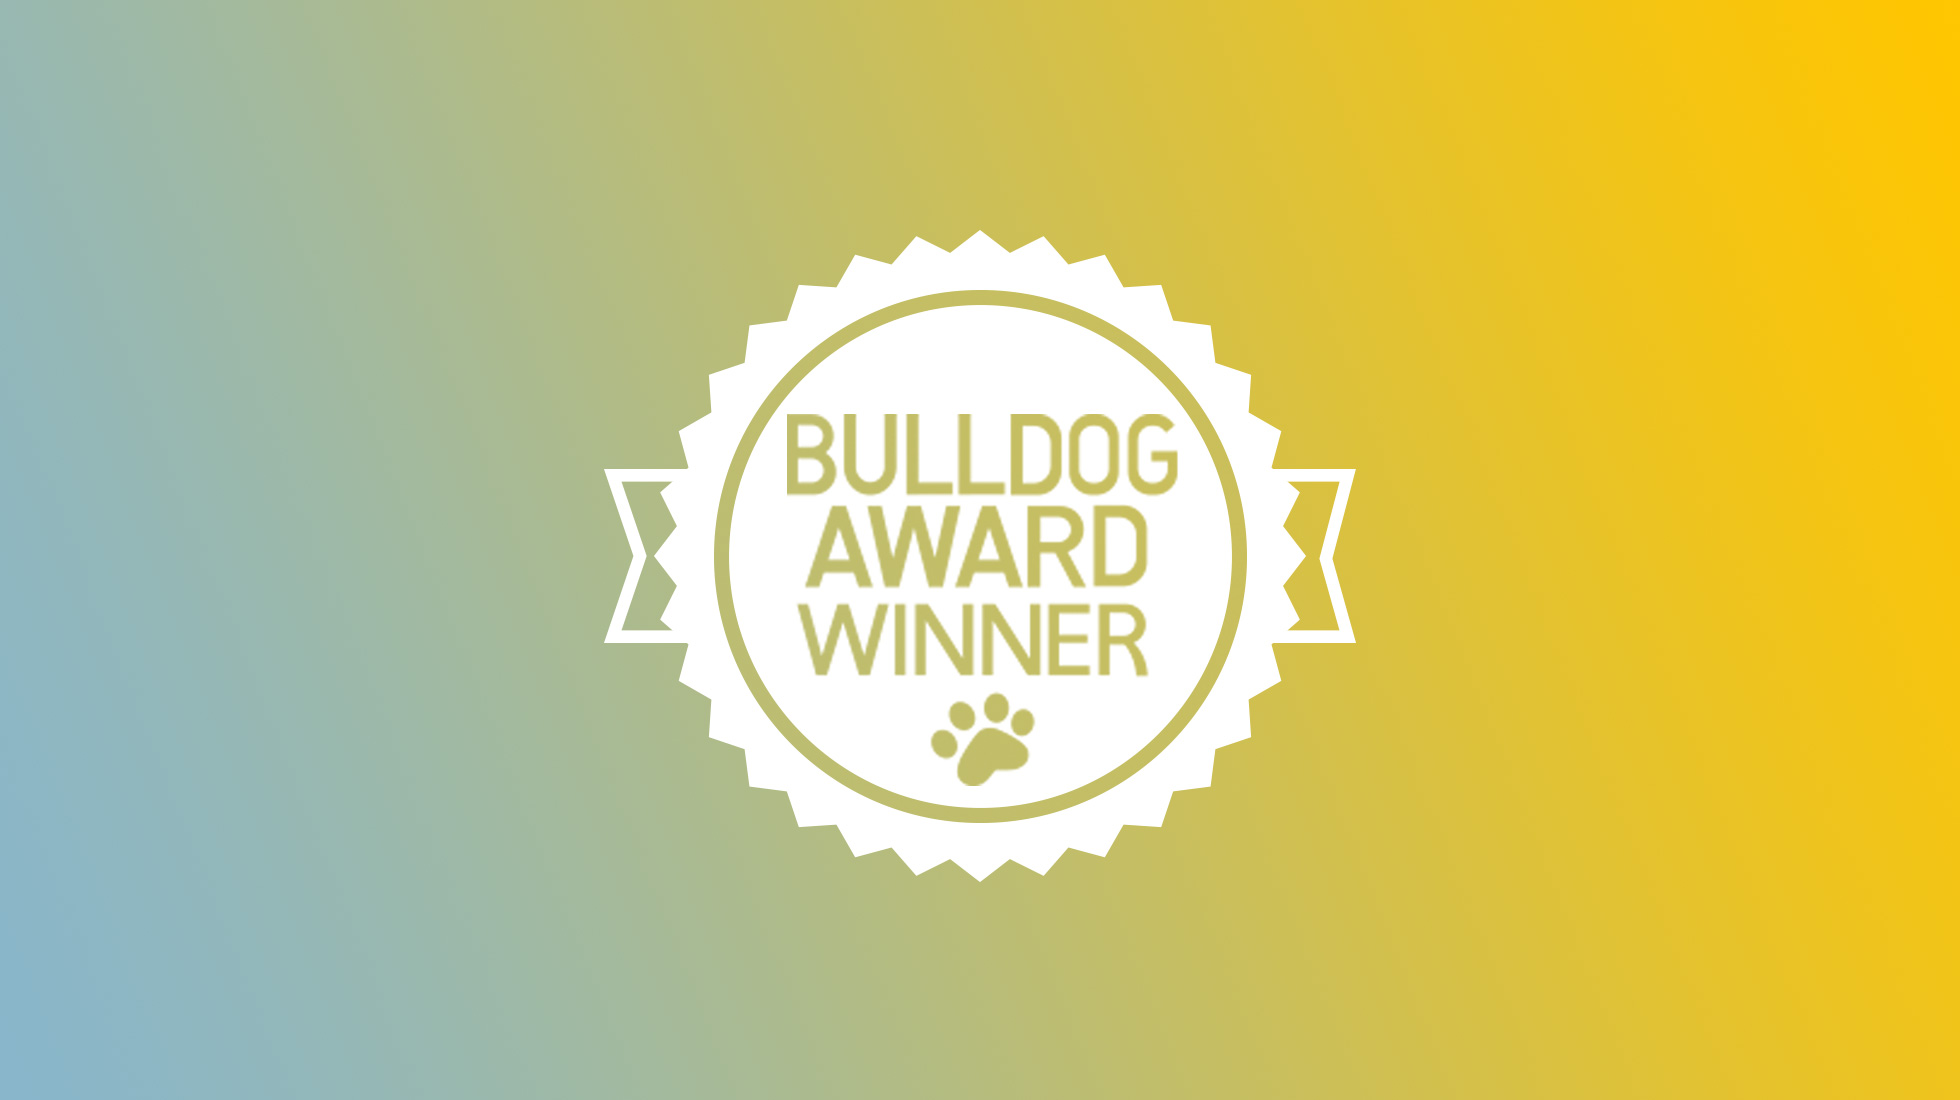 Bulldog public relations award